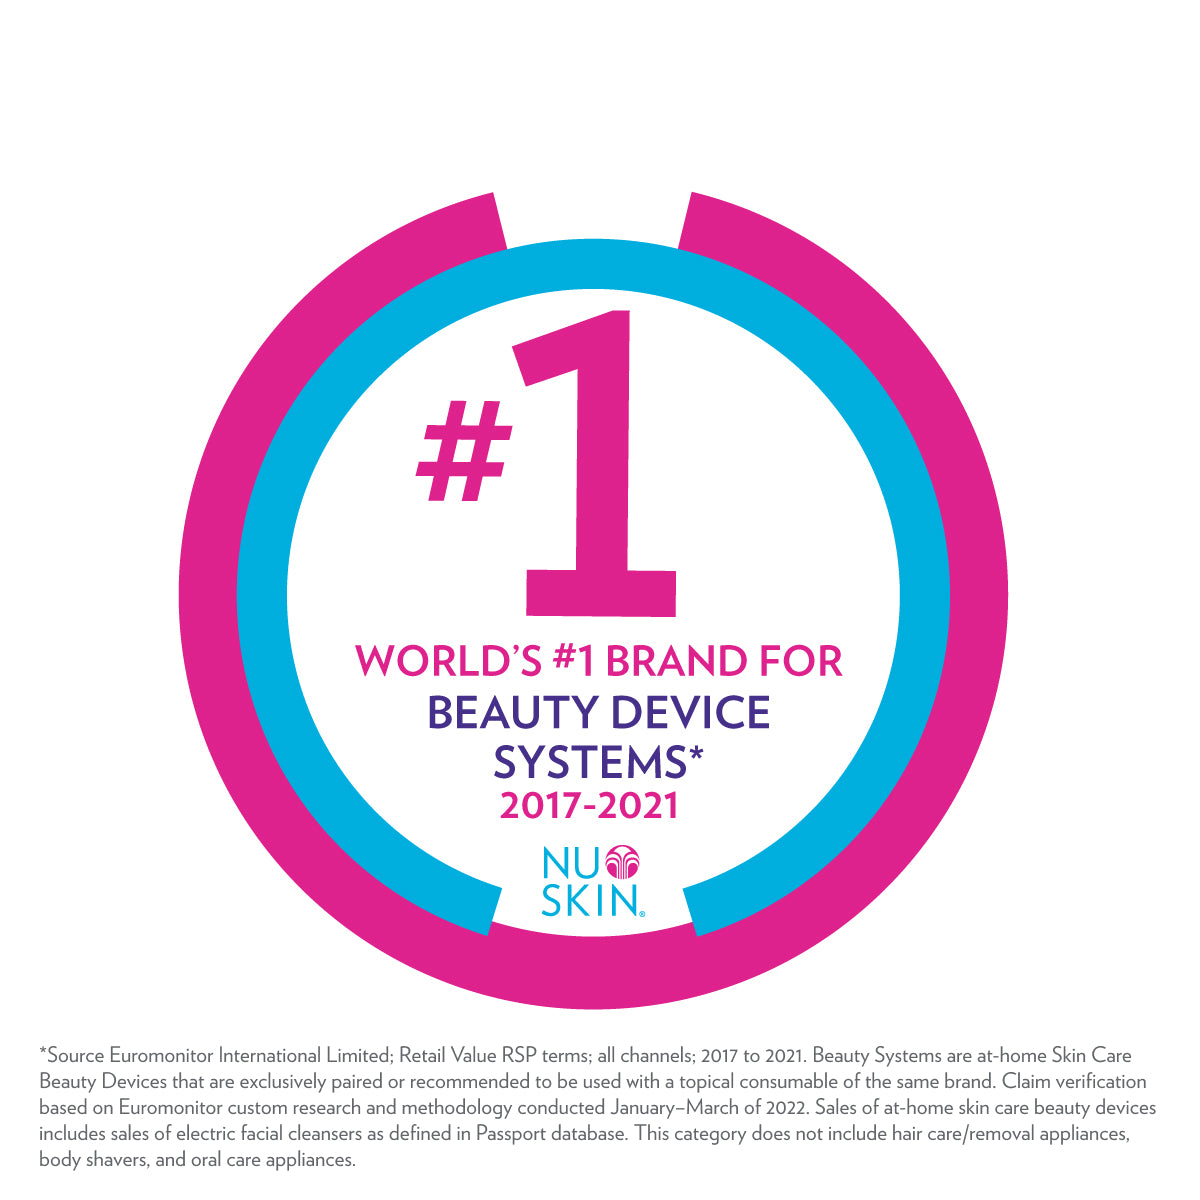 Nu Skin is 's werelds nummer 1 op het gebied van thuis-wellness. Beauty Device systemen. Dit omvat ook ageLOC Boost.